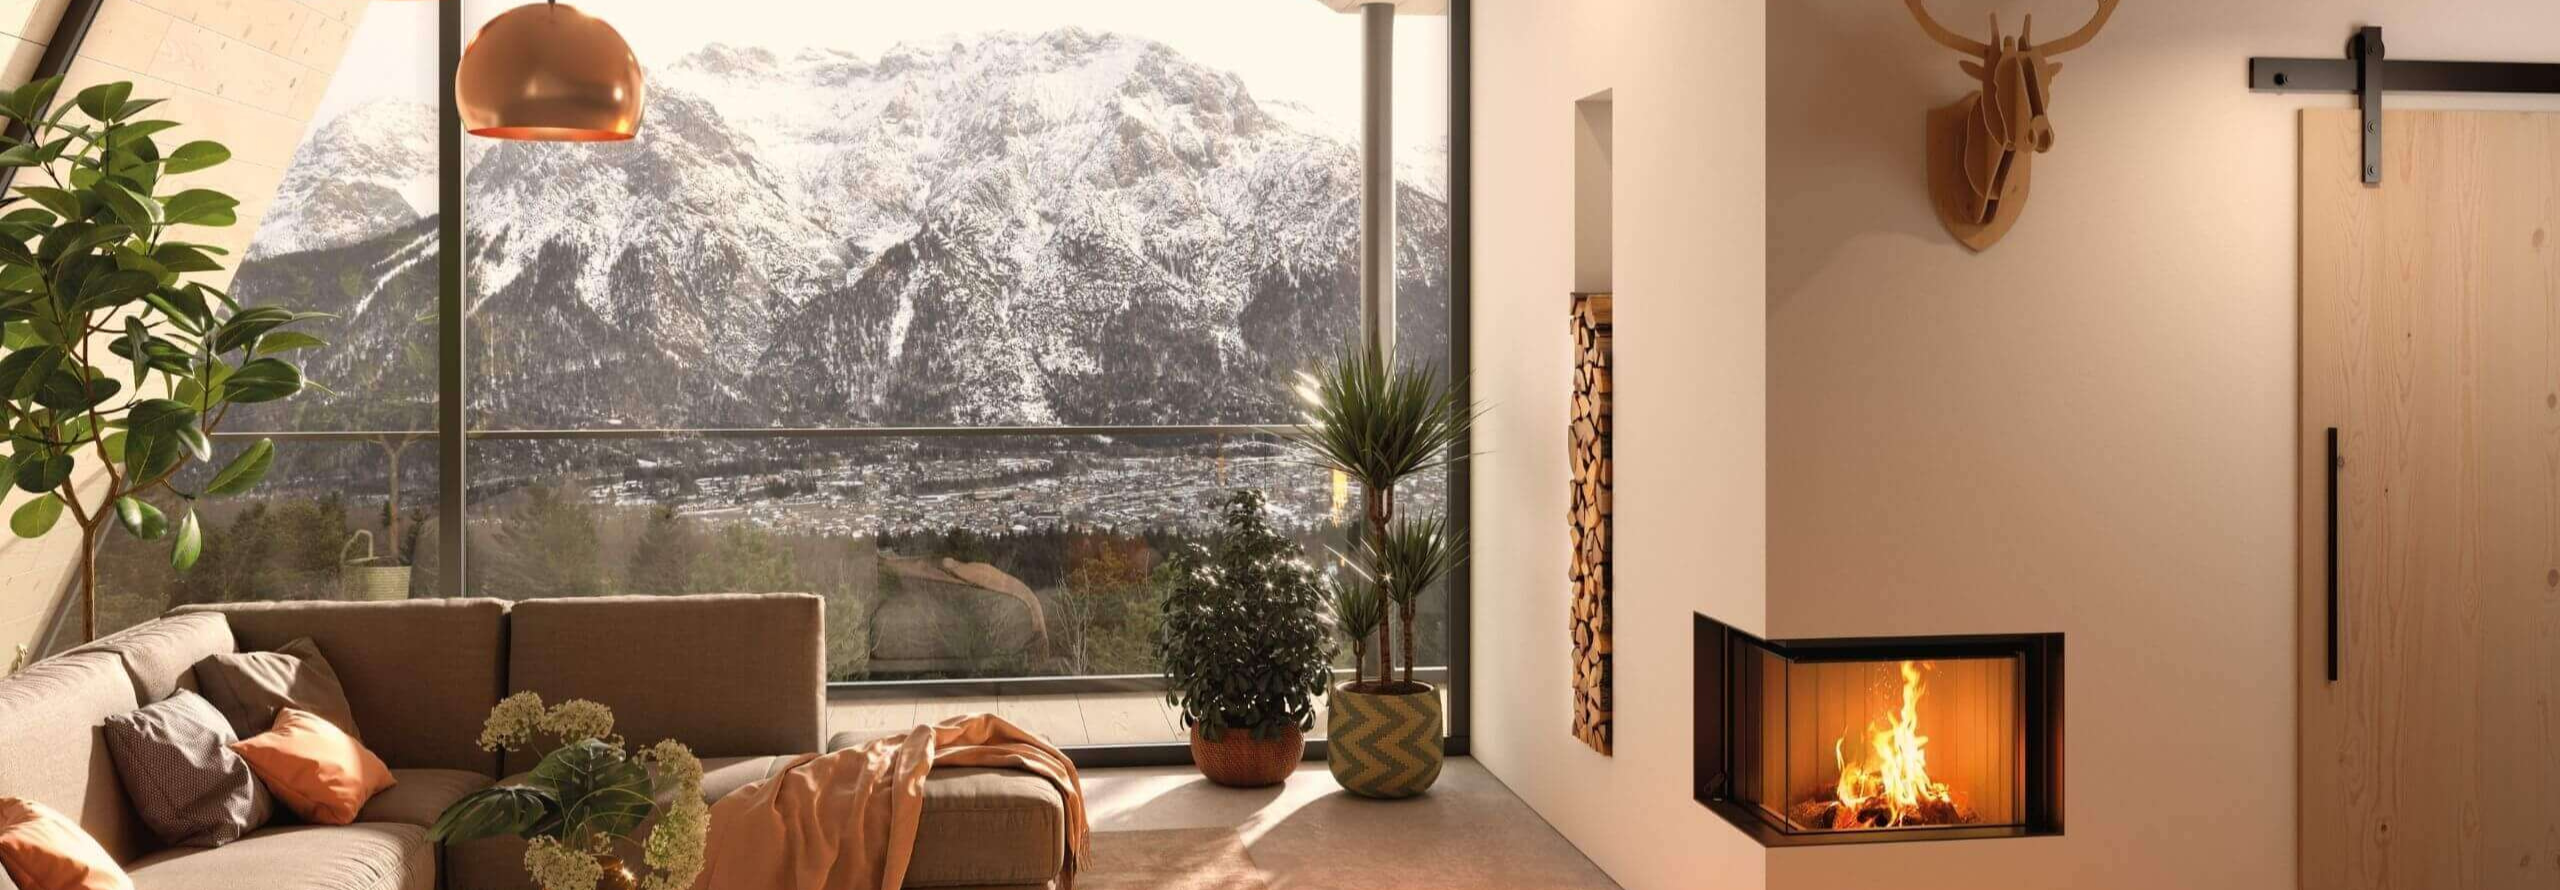 Ein Wohnzimmer mit großer Fensterfront, die einen verschneiten Berg zeigt und mit einem Kaminofen mit zweiseitiger Sichtscheibe.